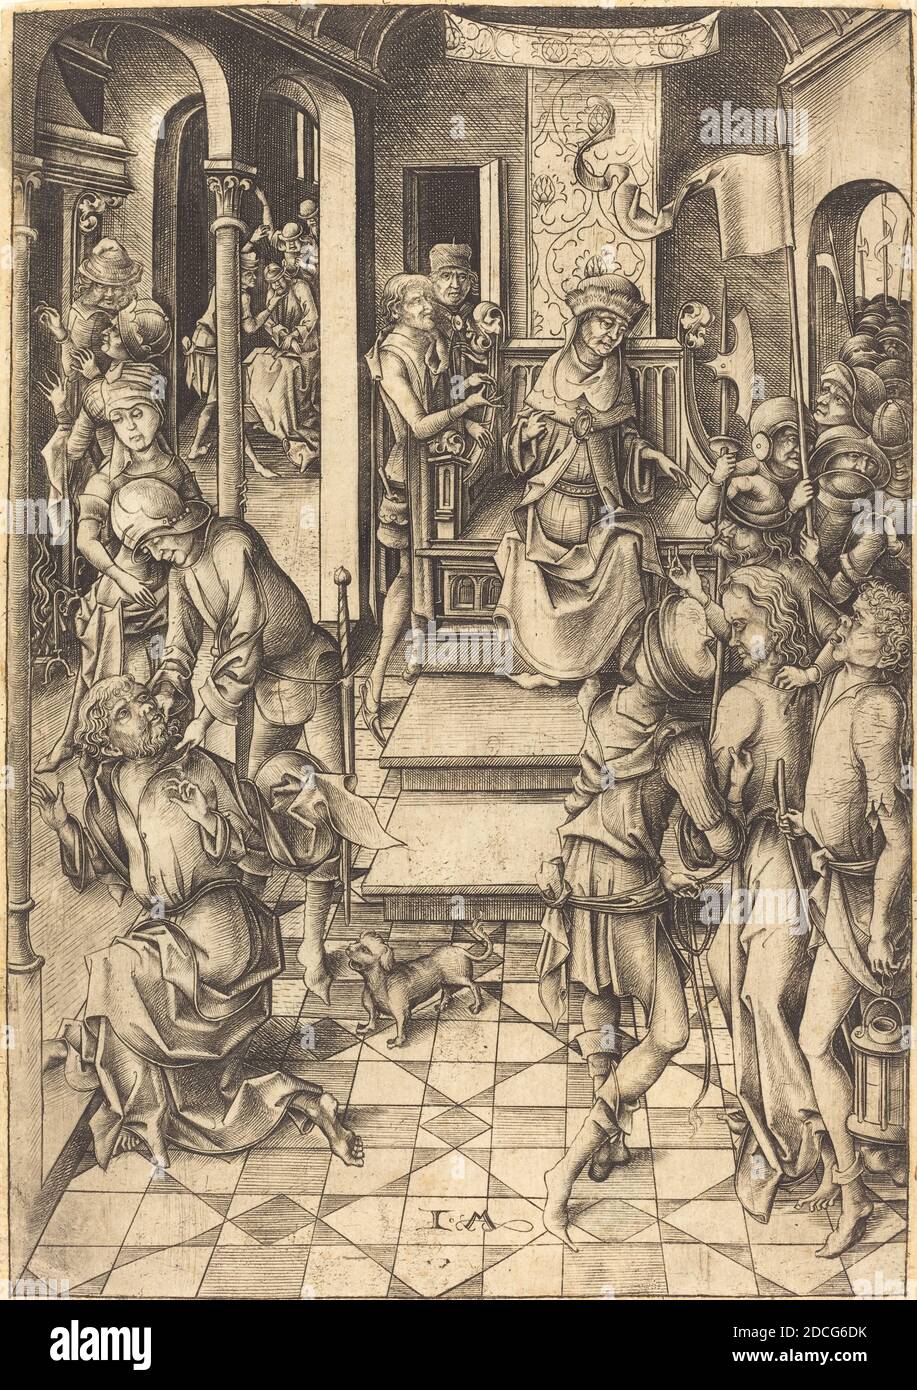 Israhel van Meckenem, (artist), German, c. 1445 - 1503, Christ before Annas, Twelve Scenes of the Pasion, (series), c. 1480, engraving Stock Photo